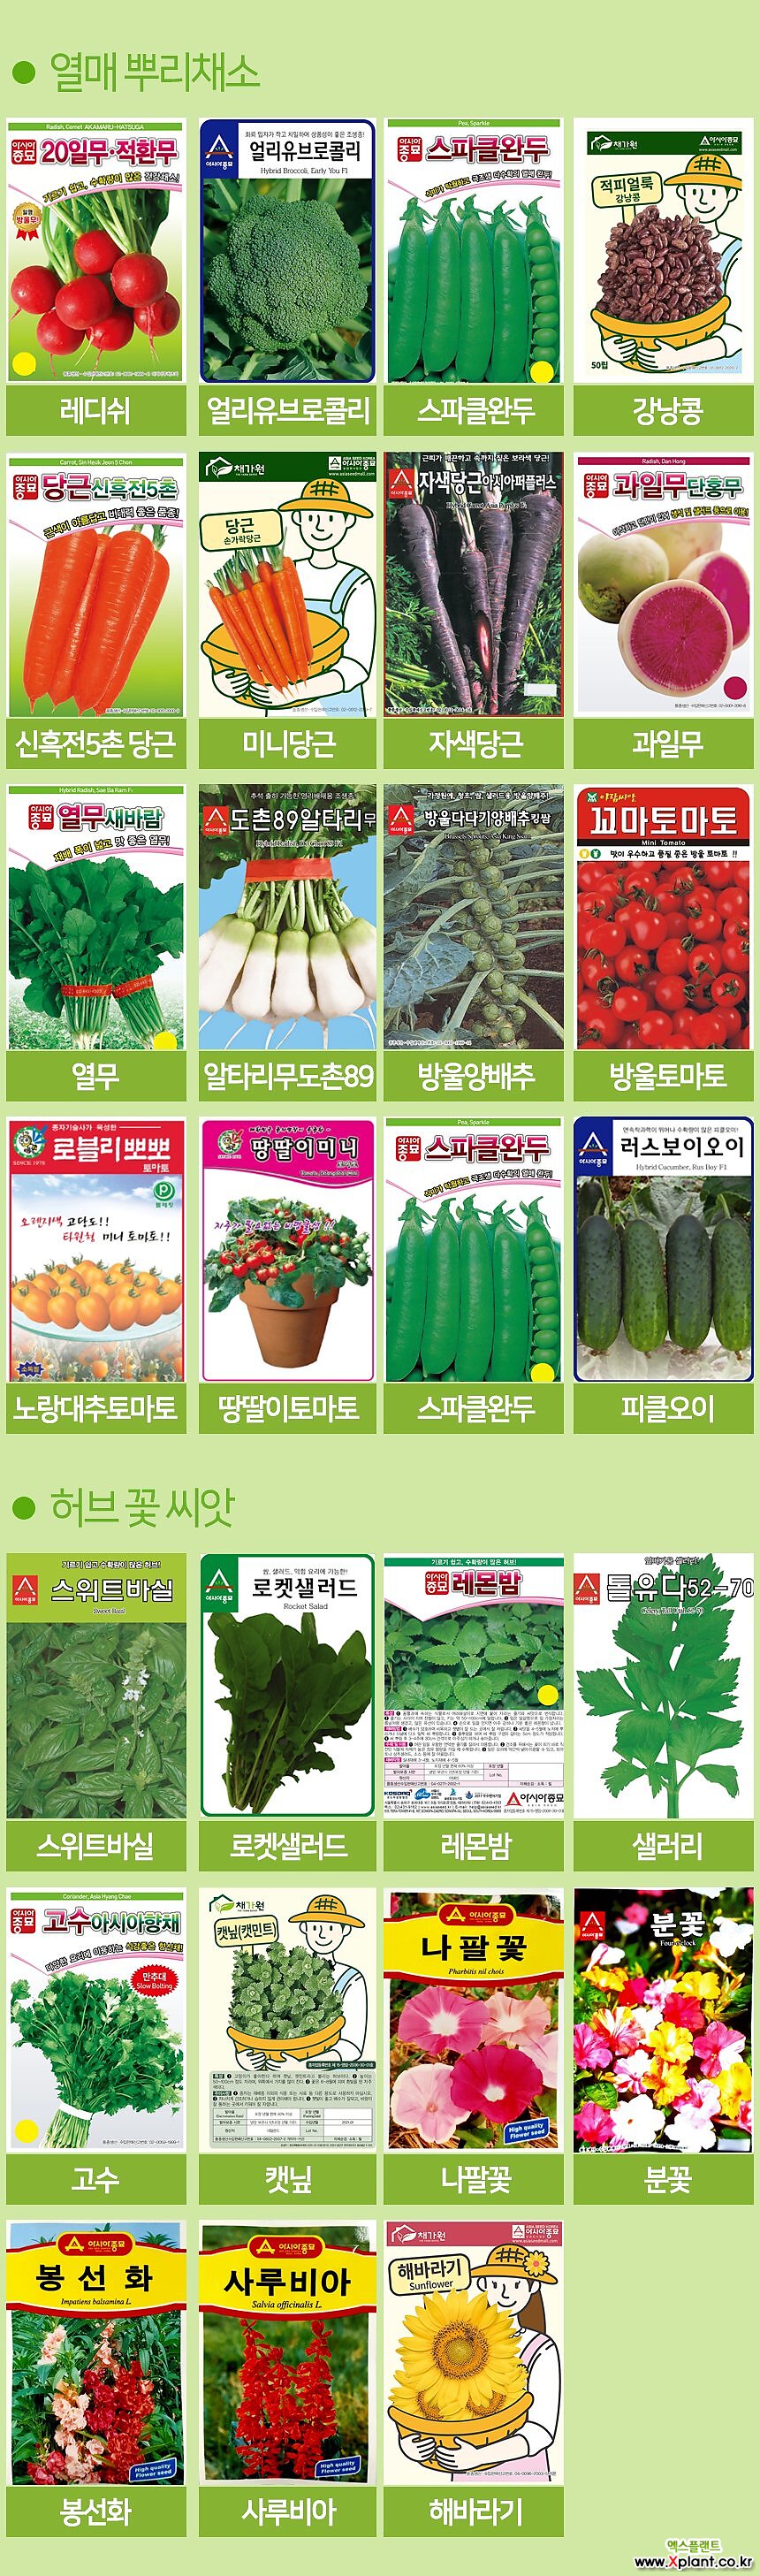 세경팜 시저스그린 로메인상추 씨앗 베란다텃밭 식물키우기